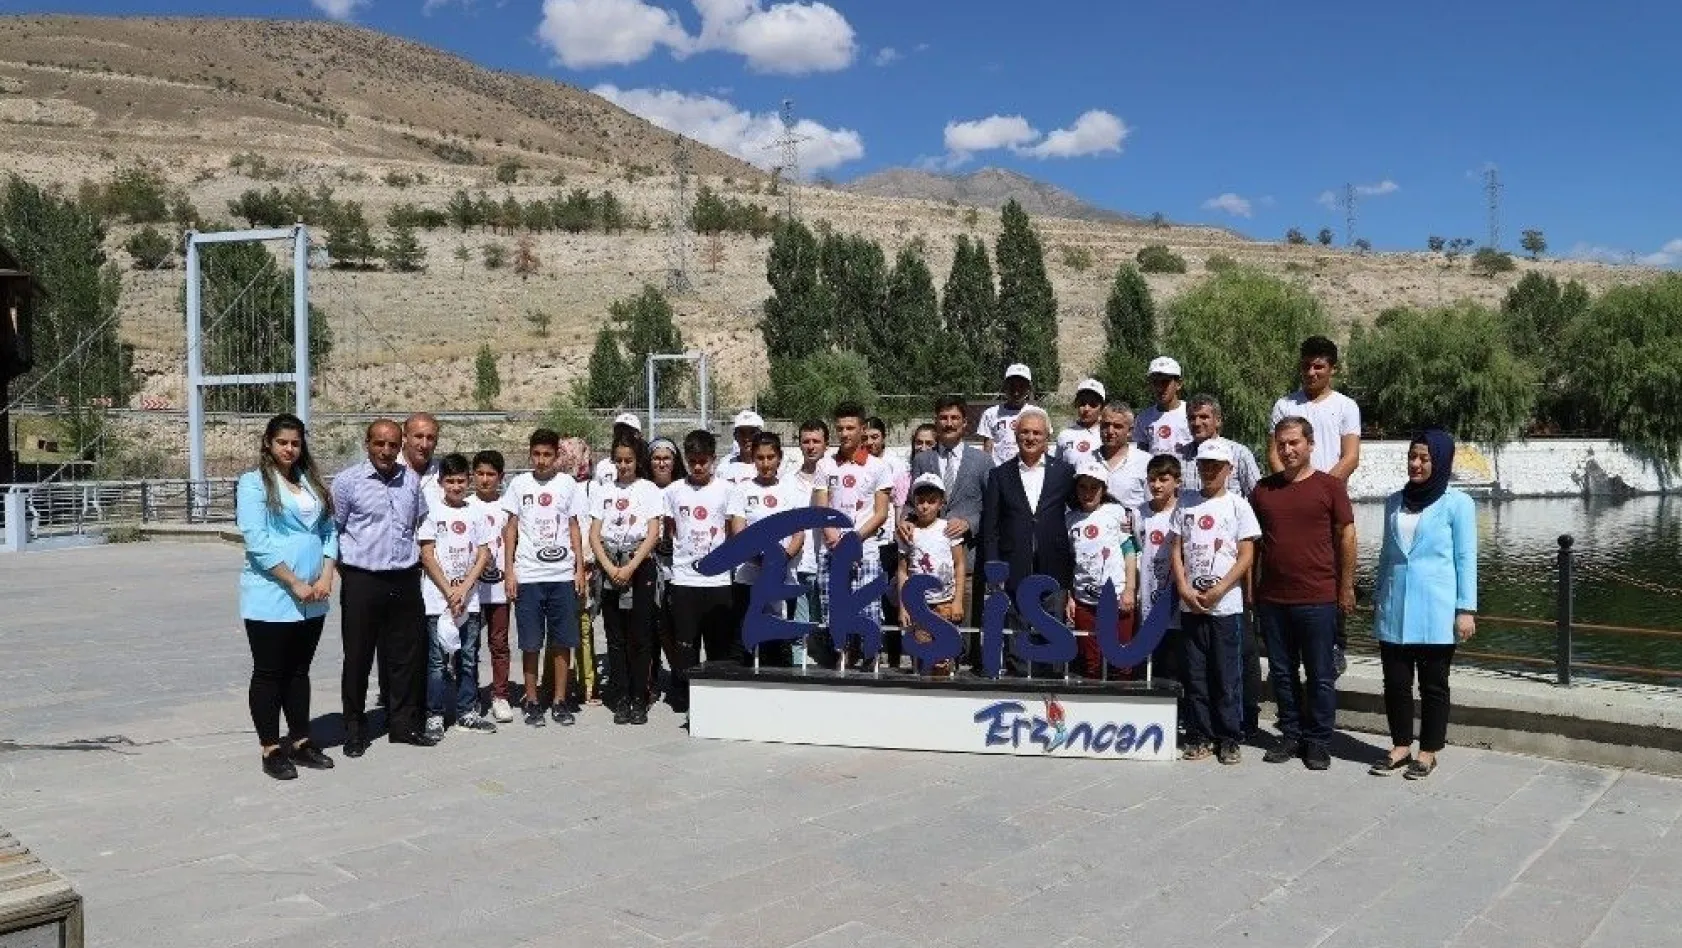 Başarılı öğrenciler için Erzincan gezisi düzenlendi
